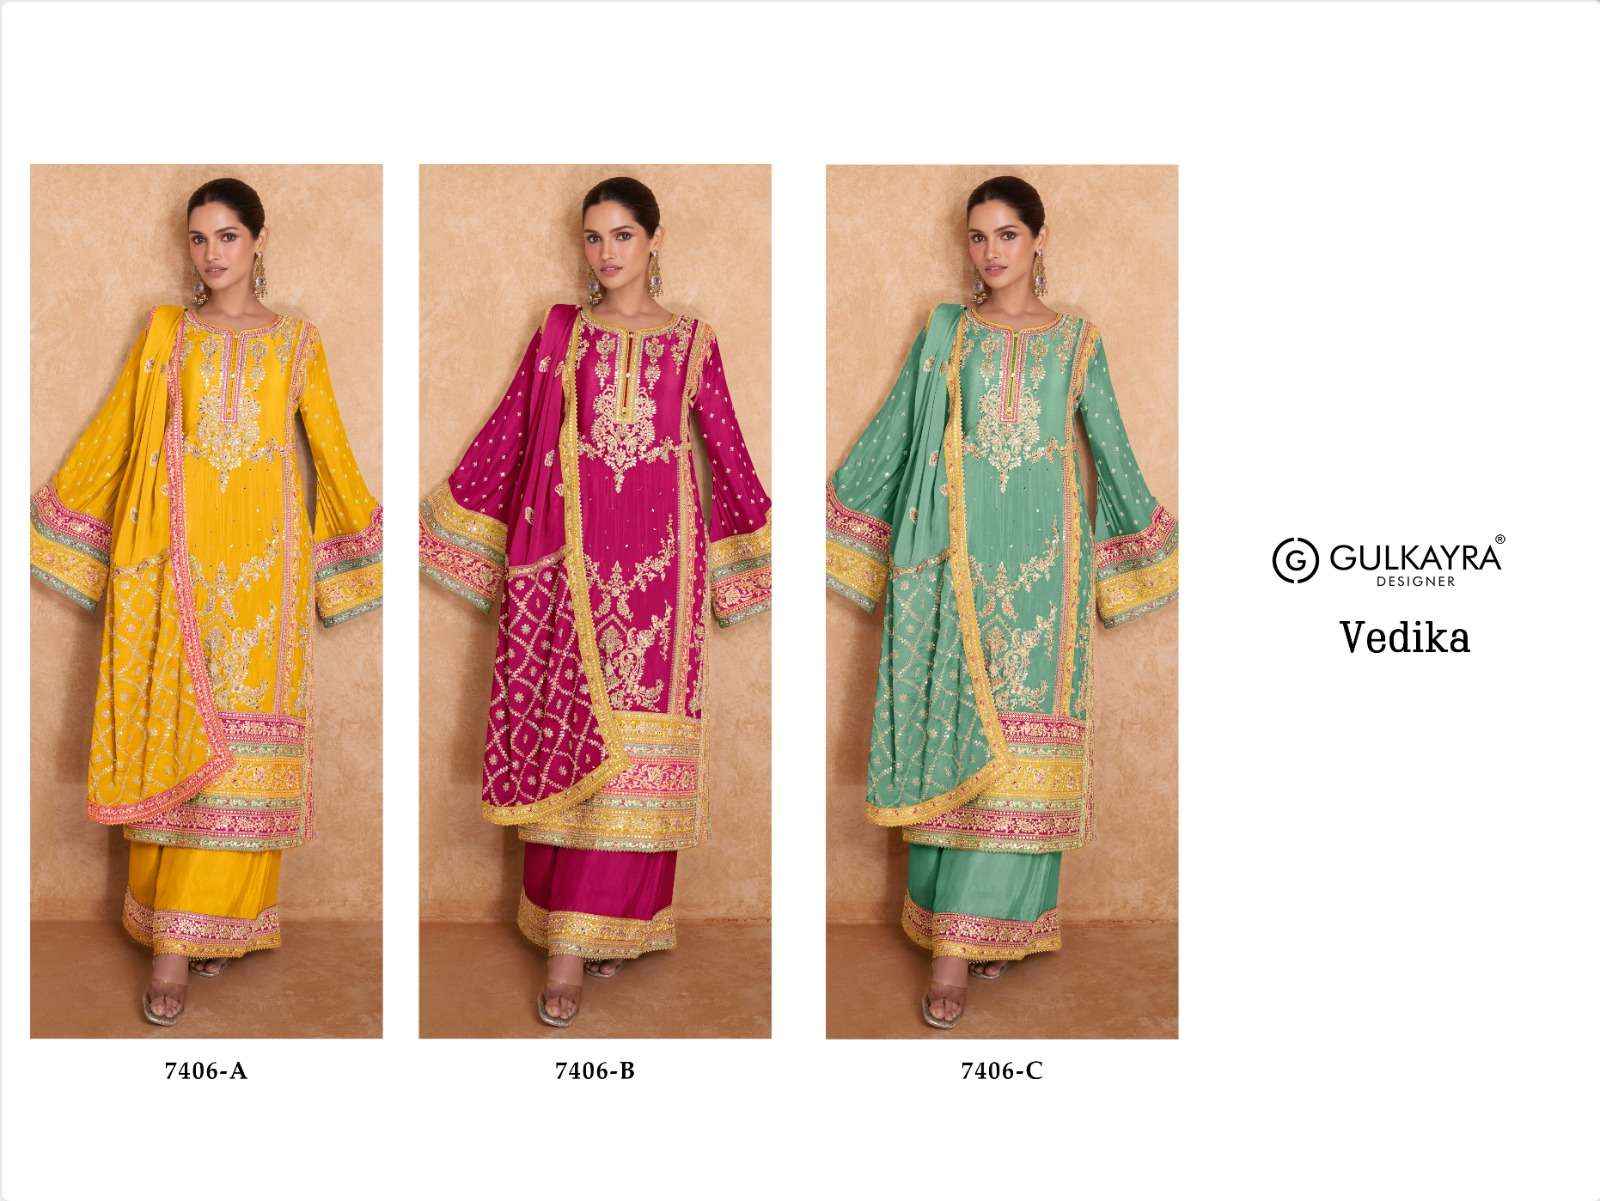 gulkayra designer vedika 7406 colour series designer readymade salwar kameez wholesaler surat gujarat